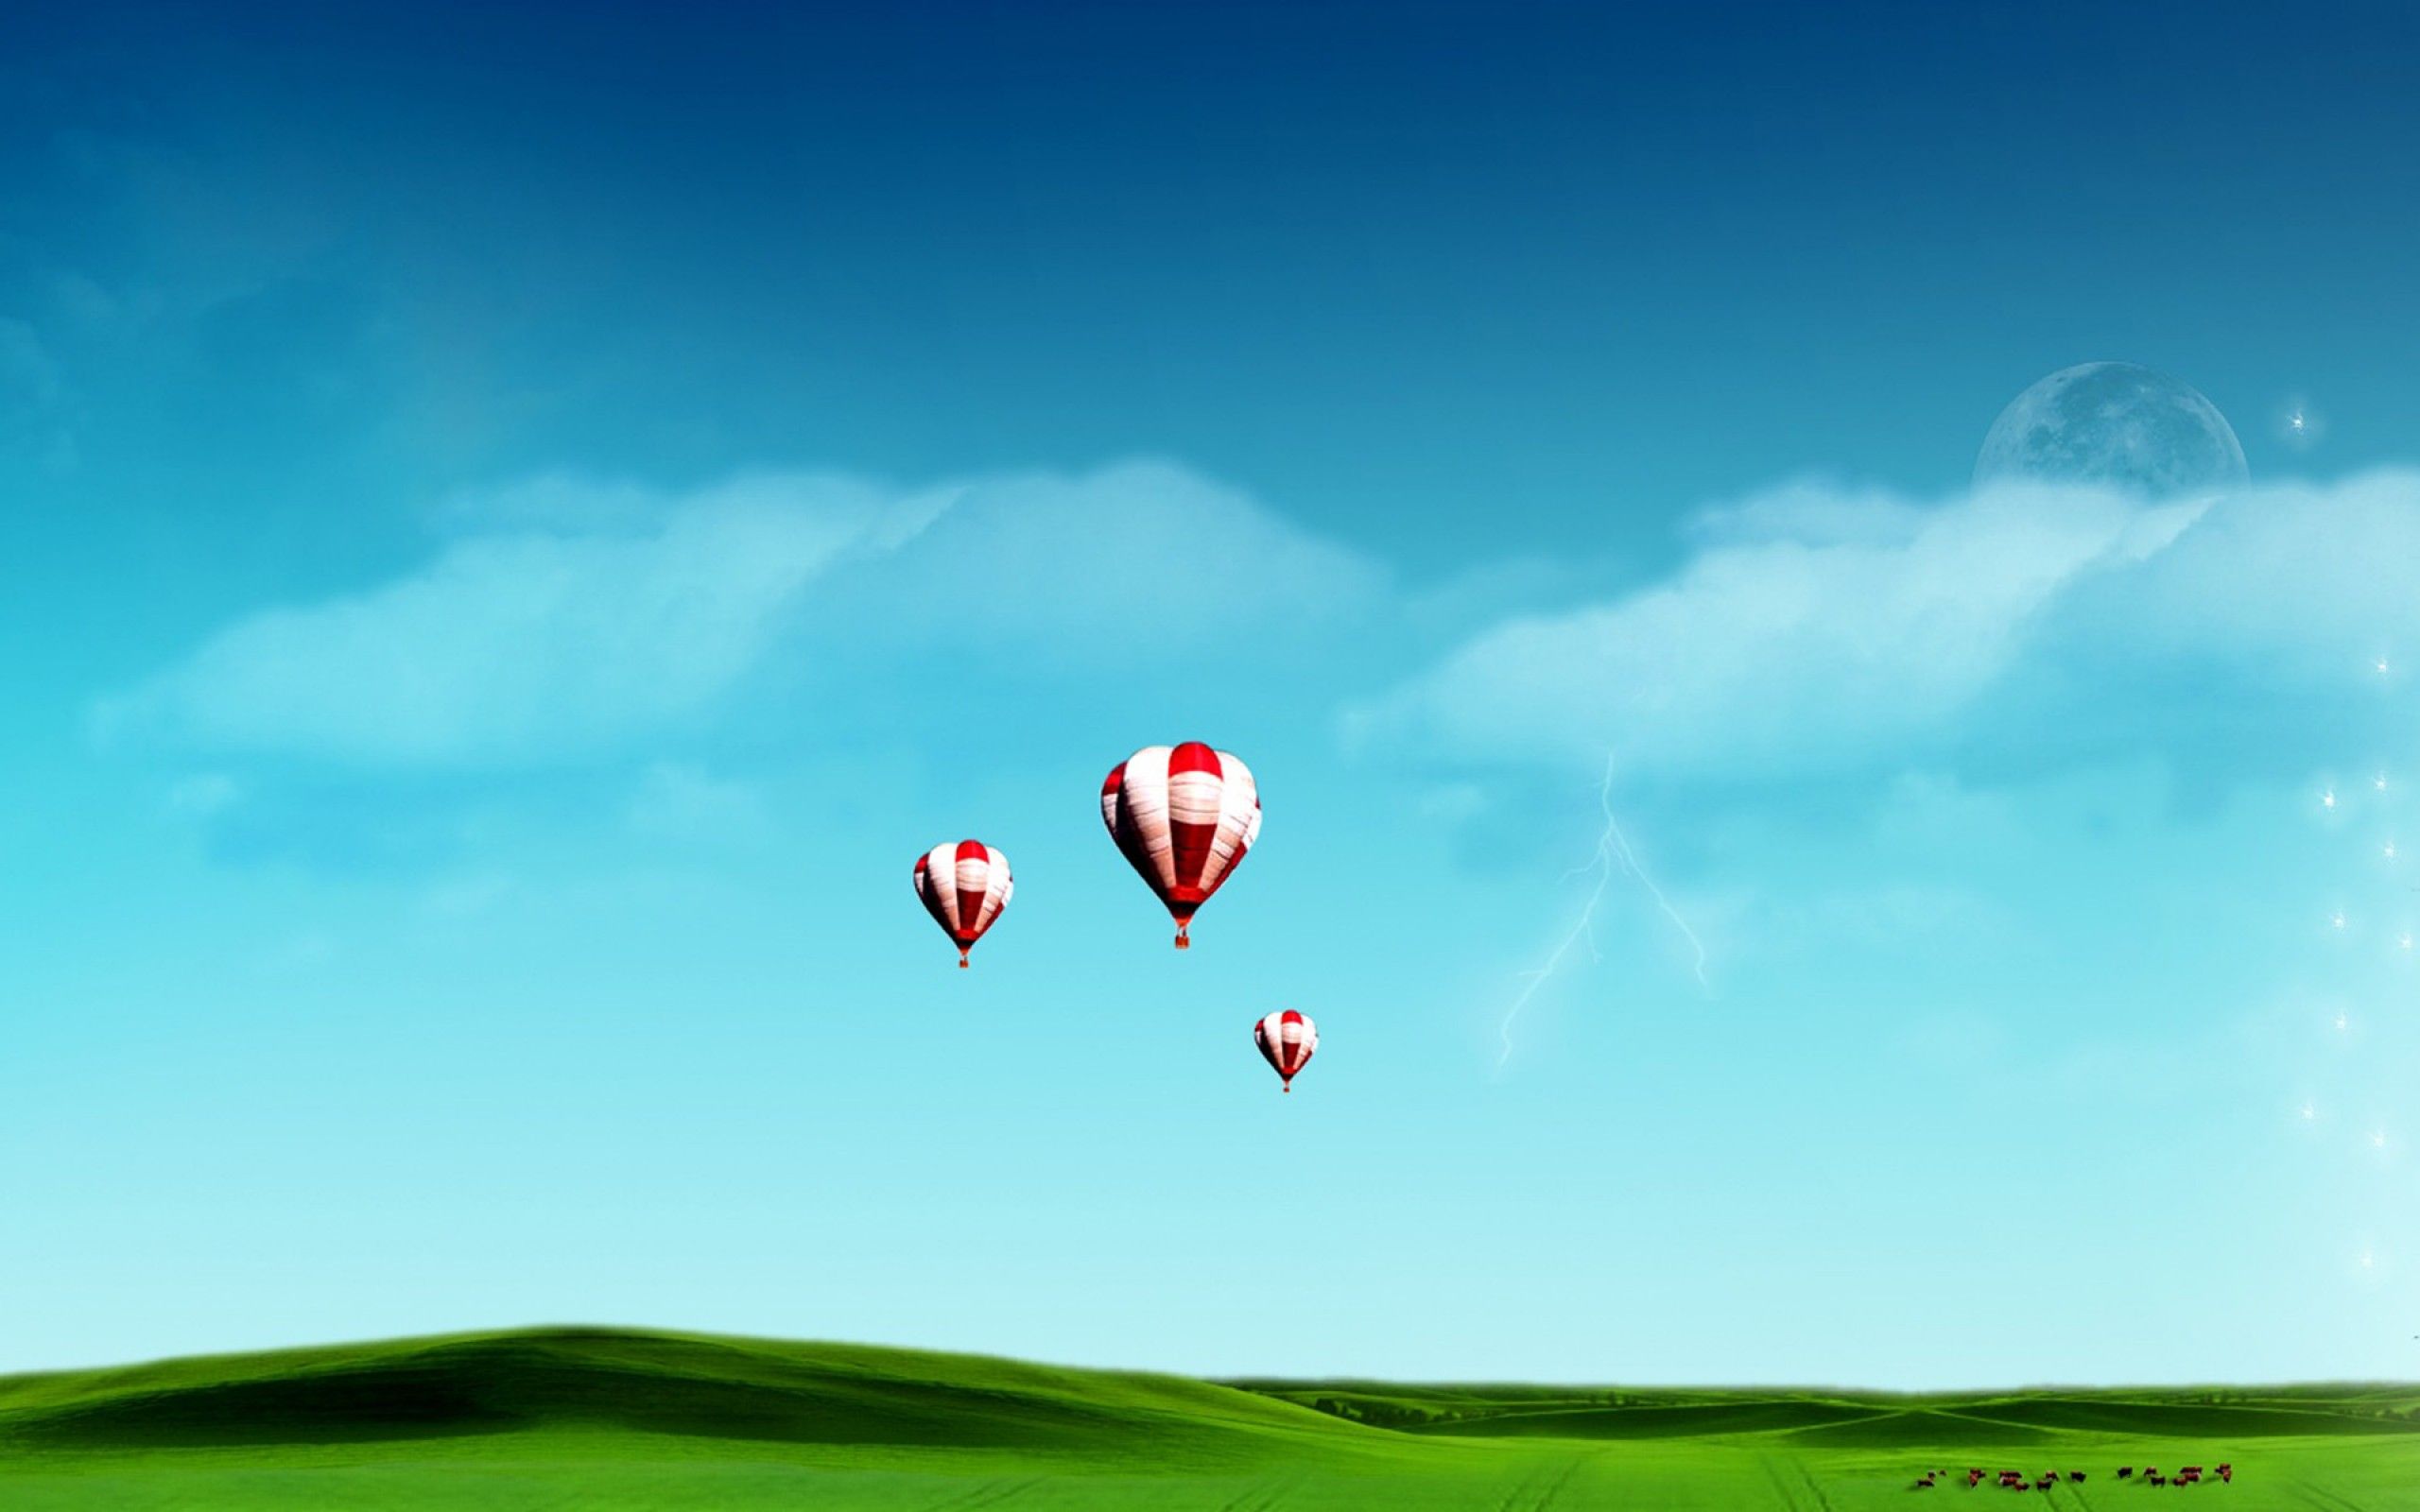 dernier nouveau fond d'écran pour mobile,faire du ballon ascensionnel,montgolfière,ciel,jour,nuage